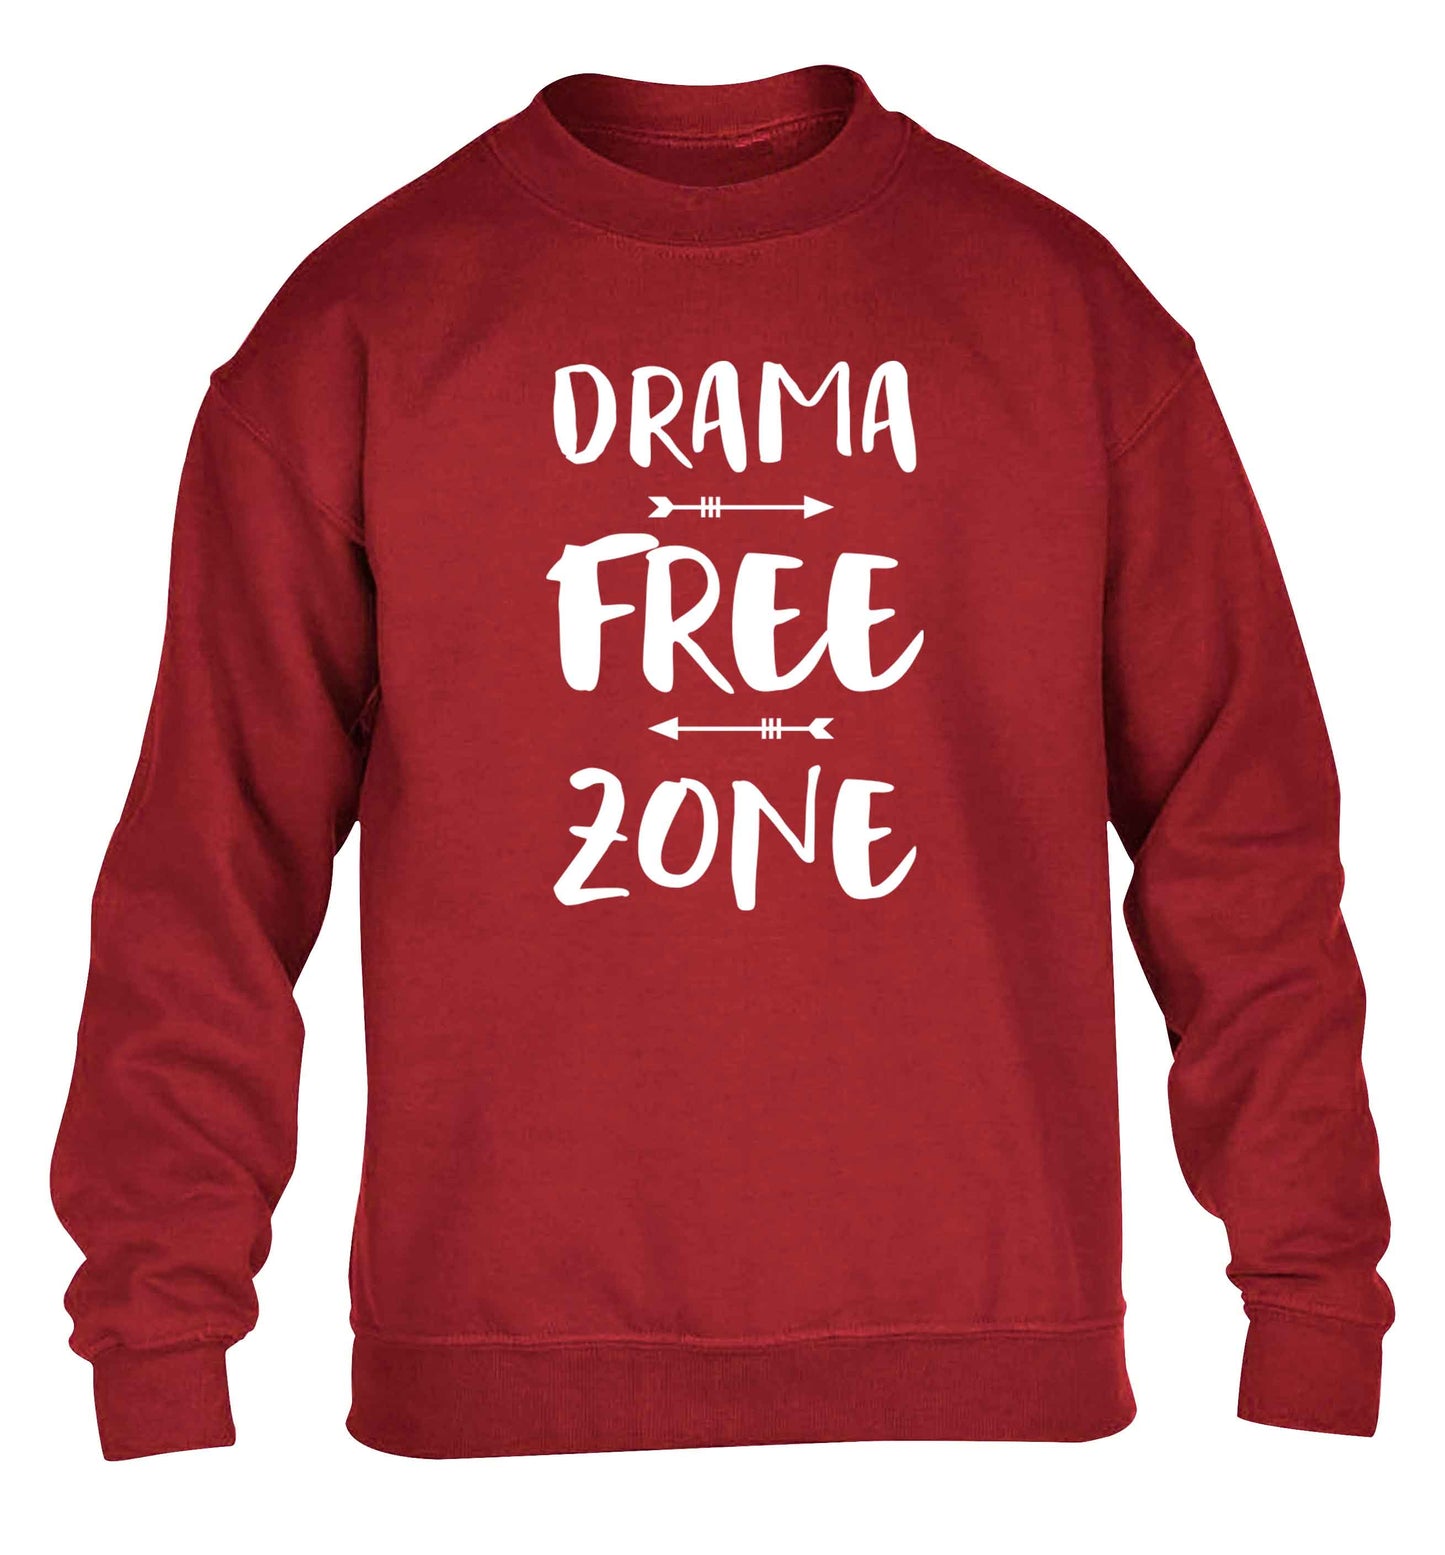 Drama free zone children's grey sweater 12-13 Years